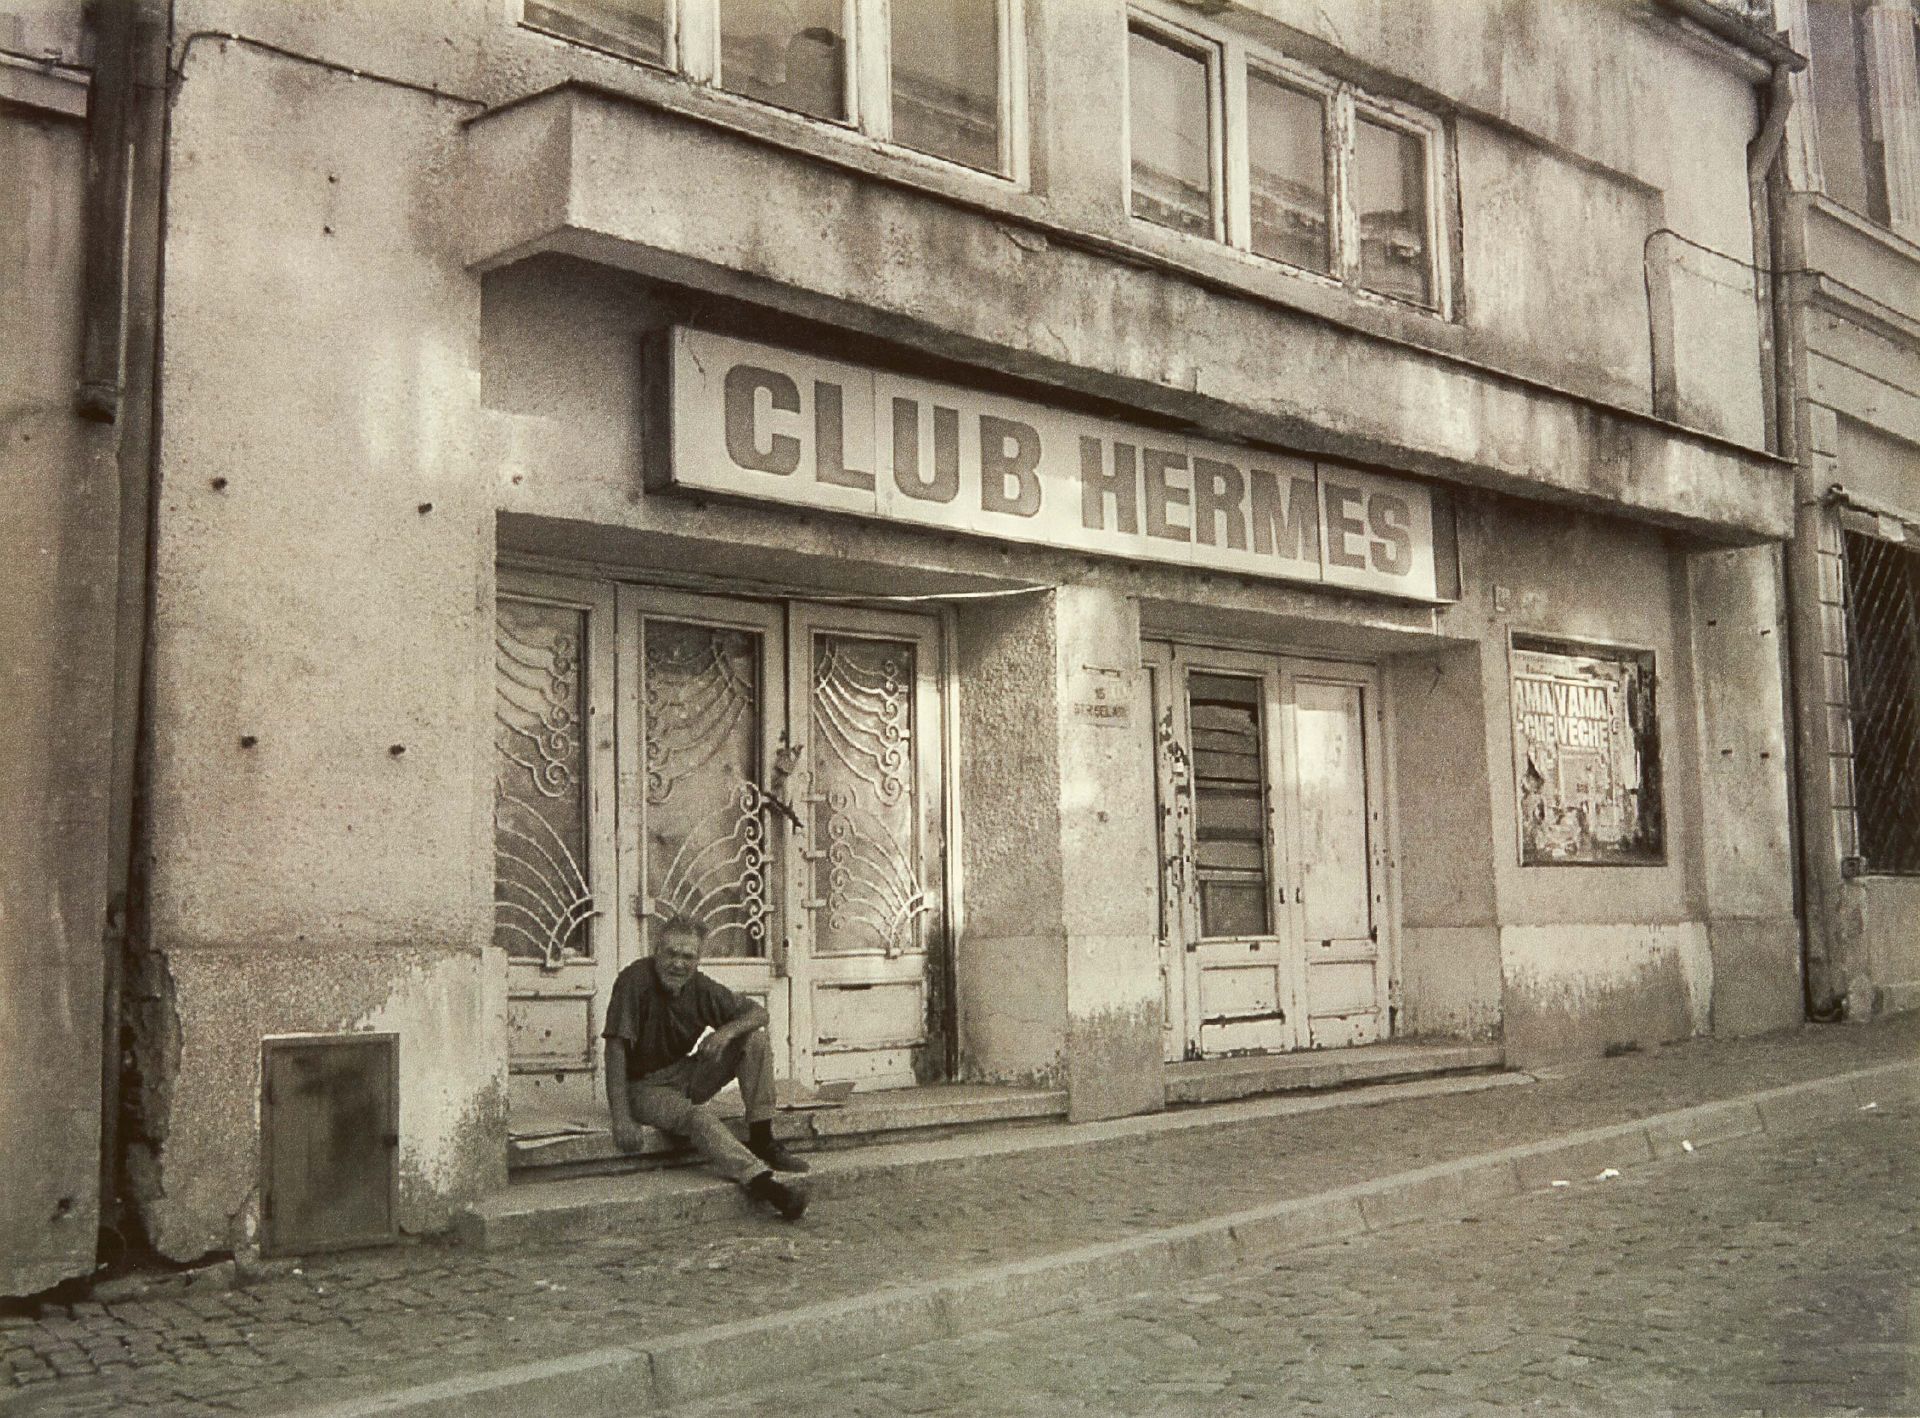 Club Hermes - Image 7 of 11